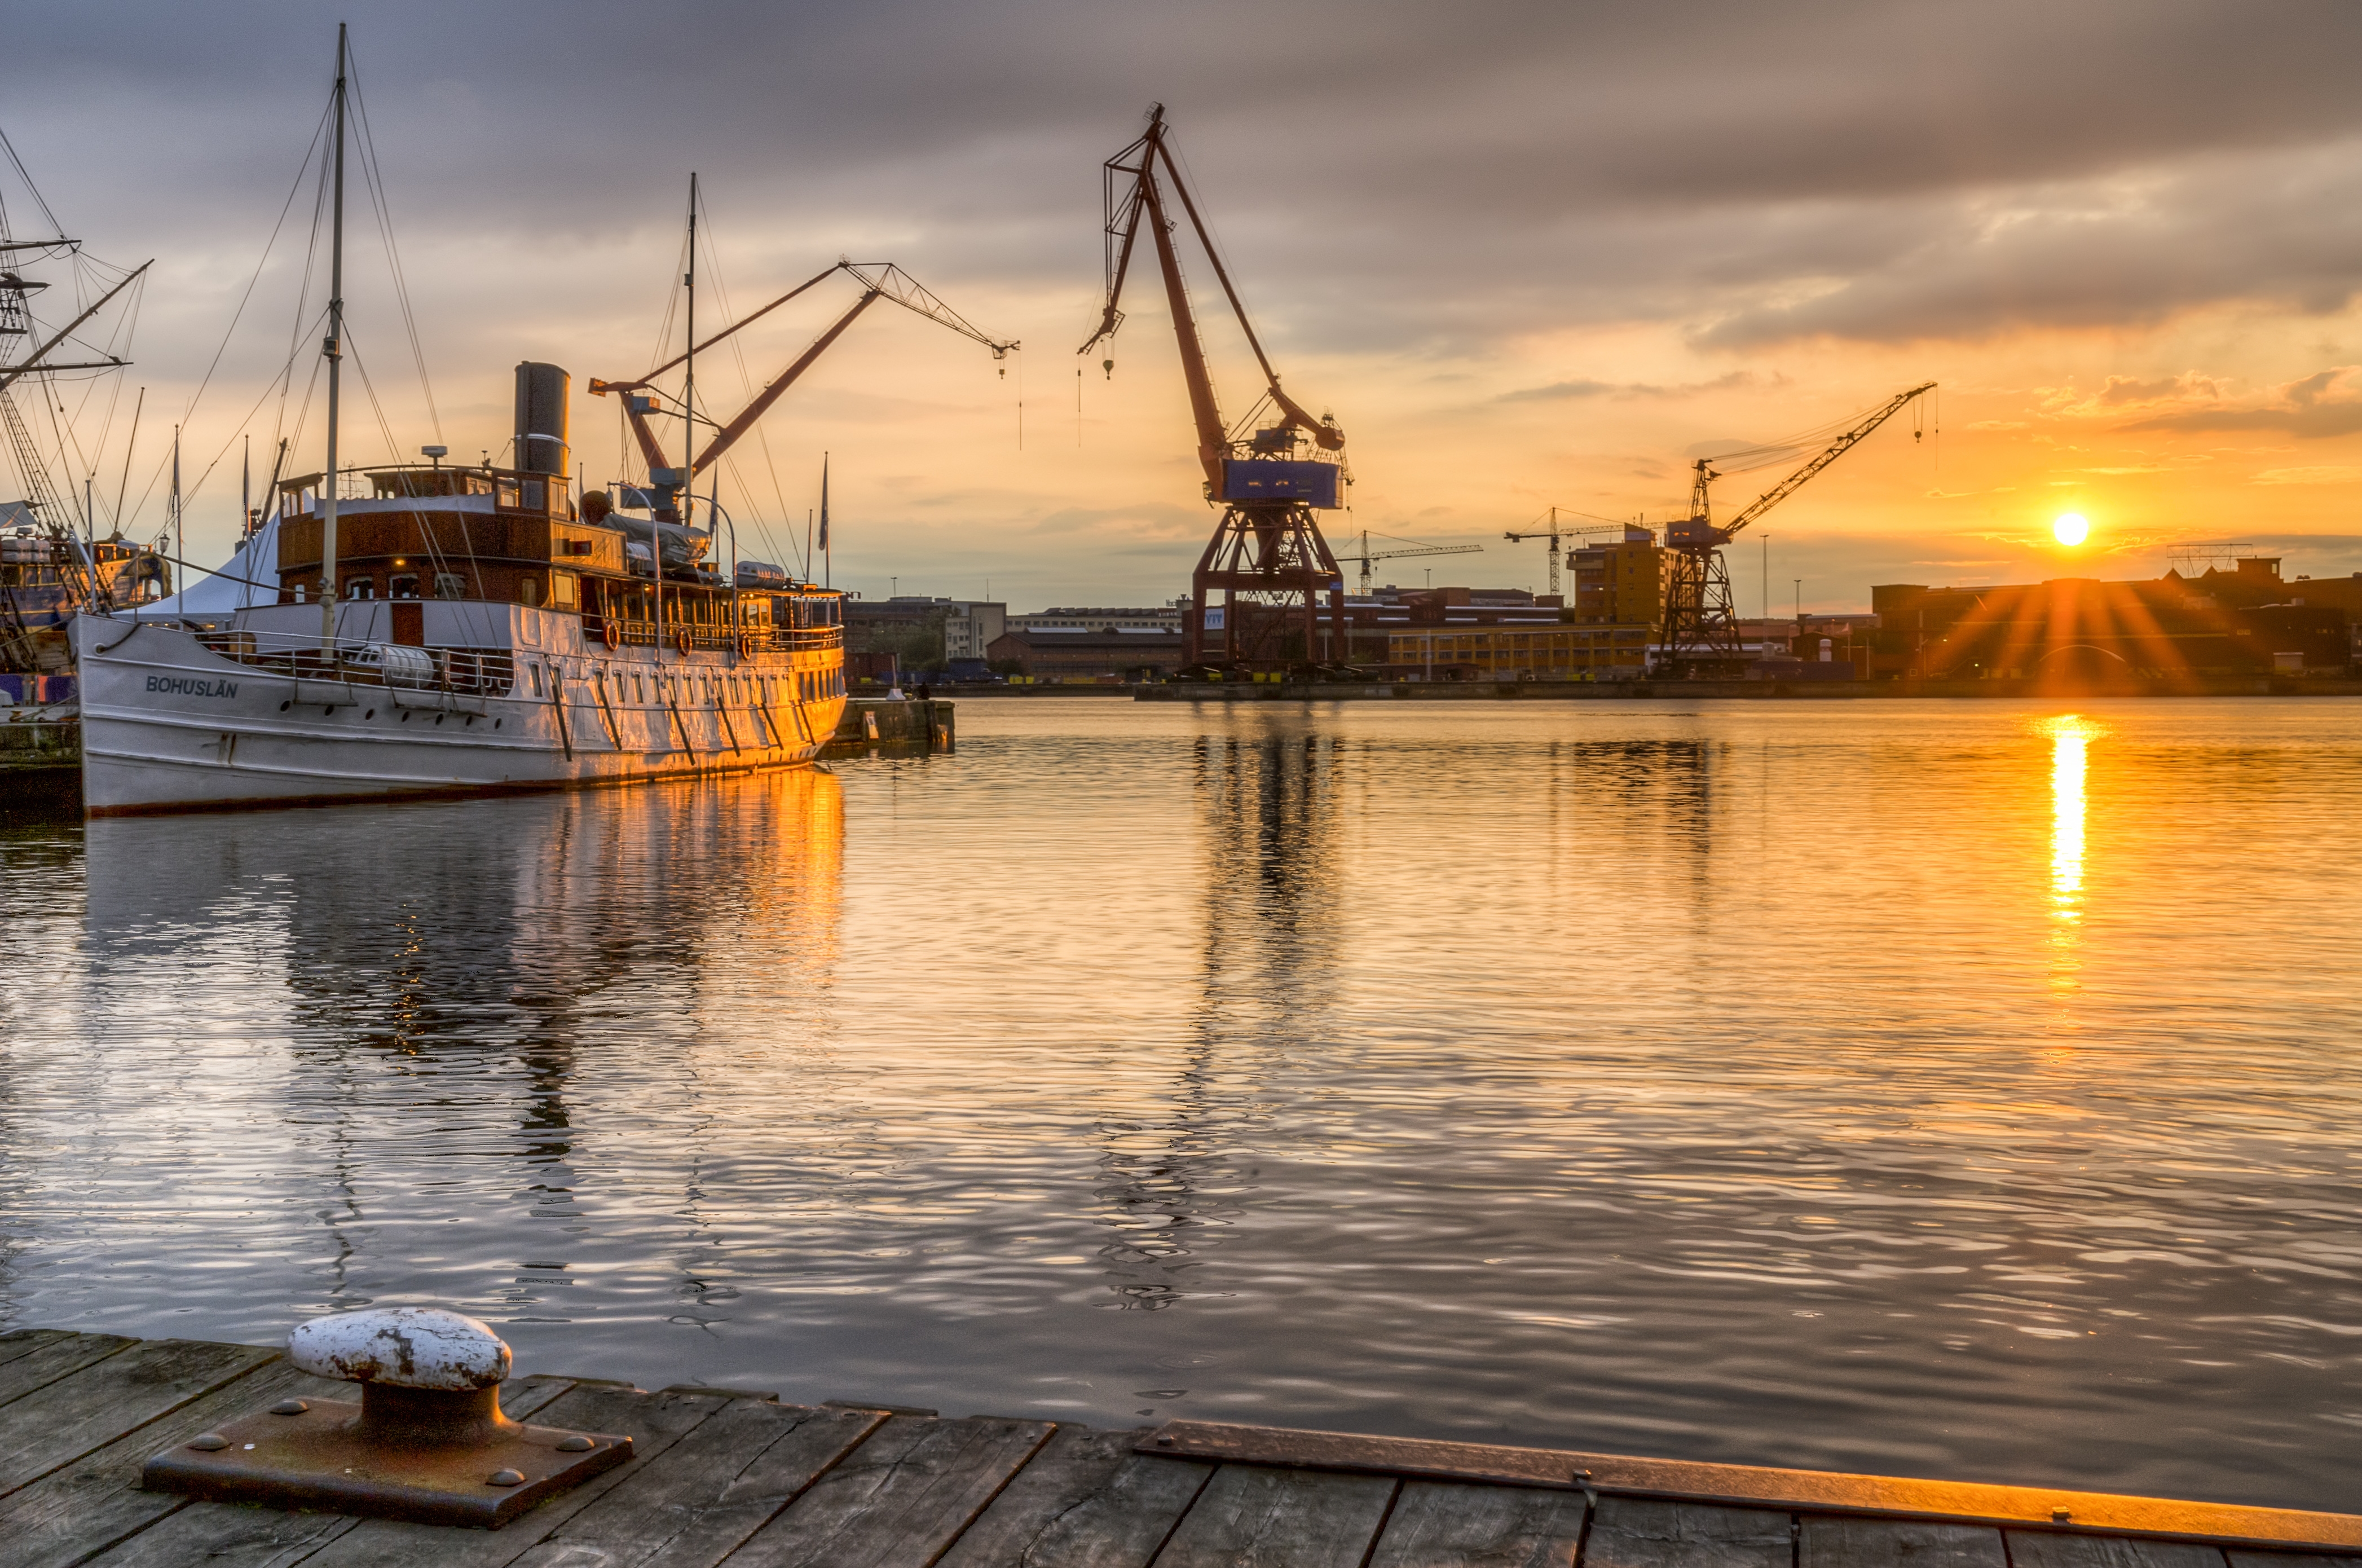 Båt och kranar i Göteborgs hamn i solnedgången